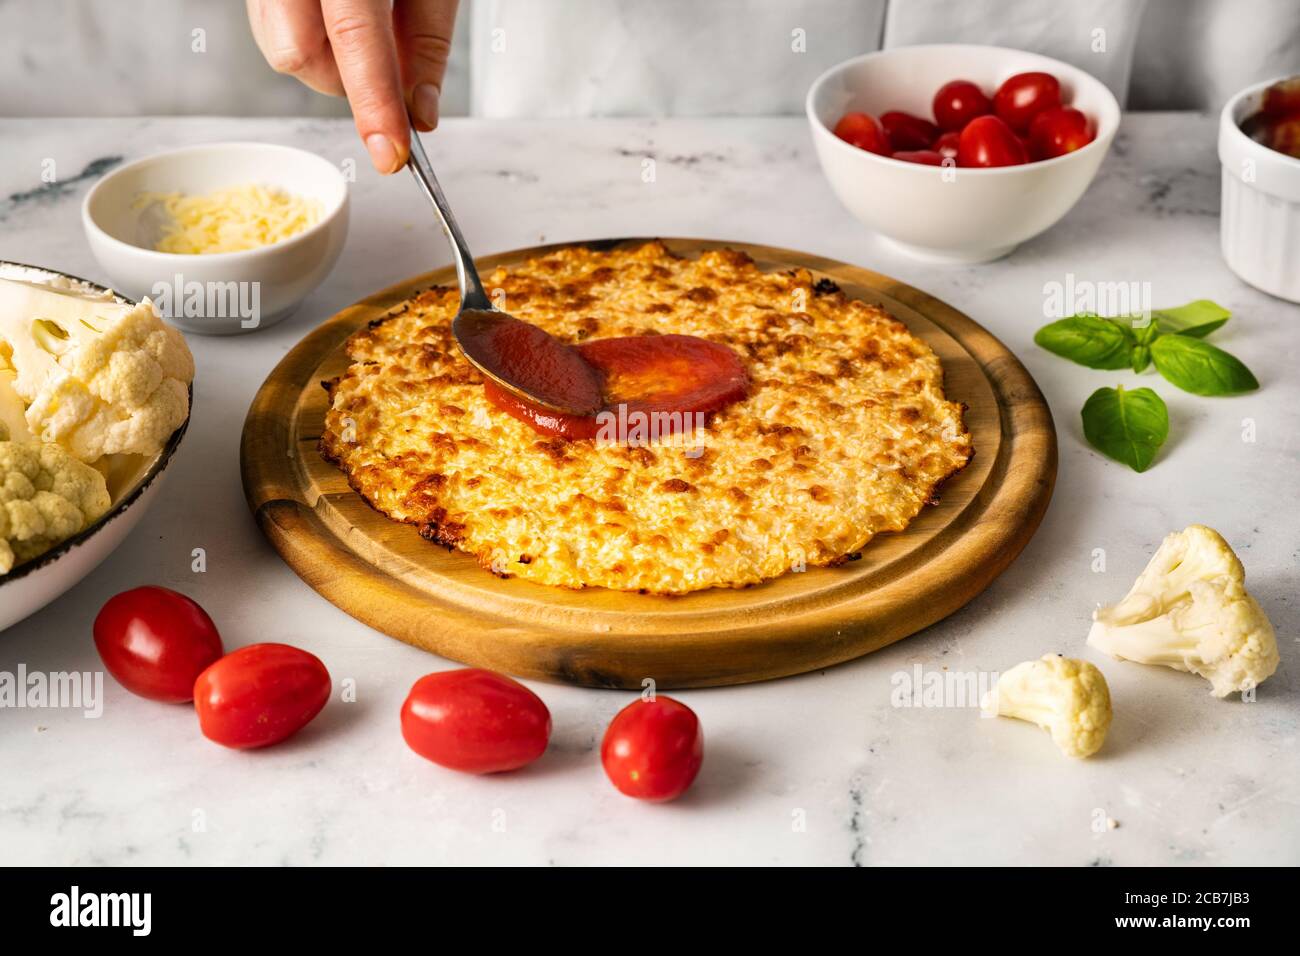 Les mains de la femme se matraque une sauce tomate sur le dessus de croûte de pizza au chou-fleur Banque D'Images